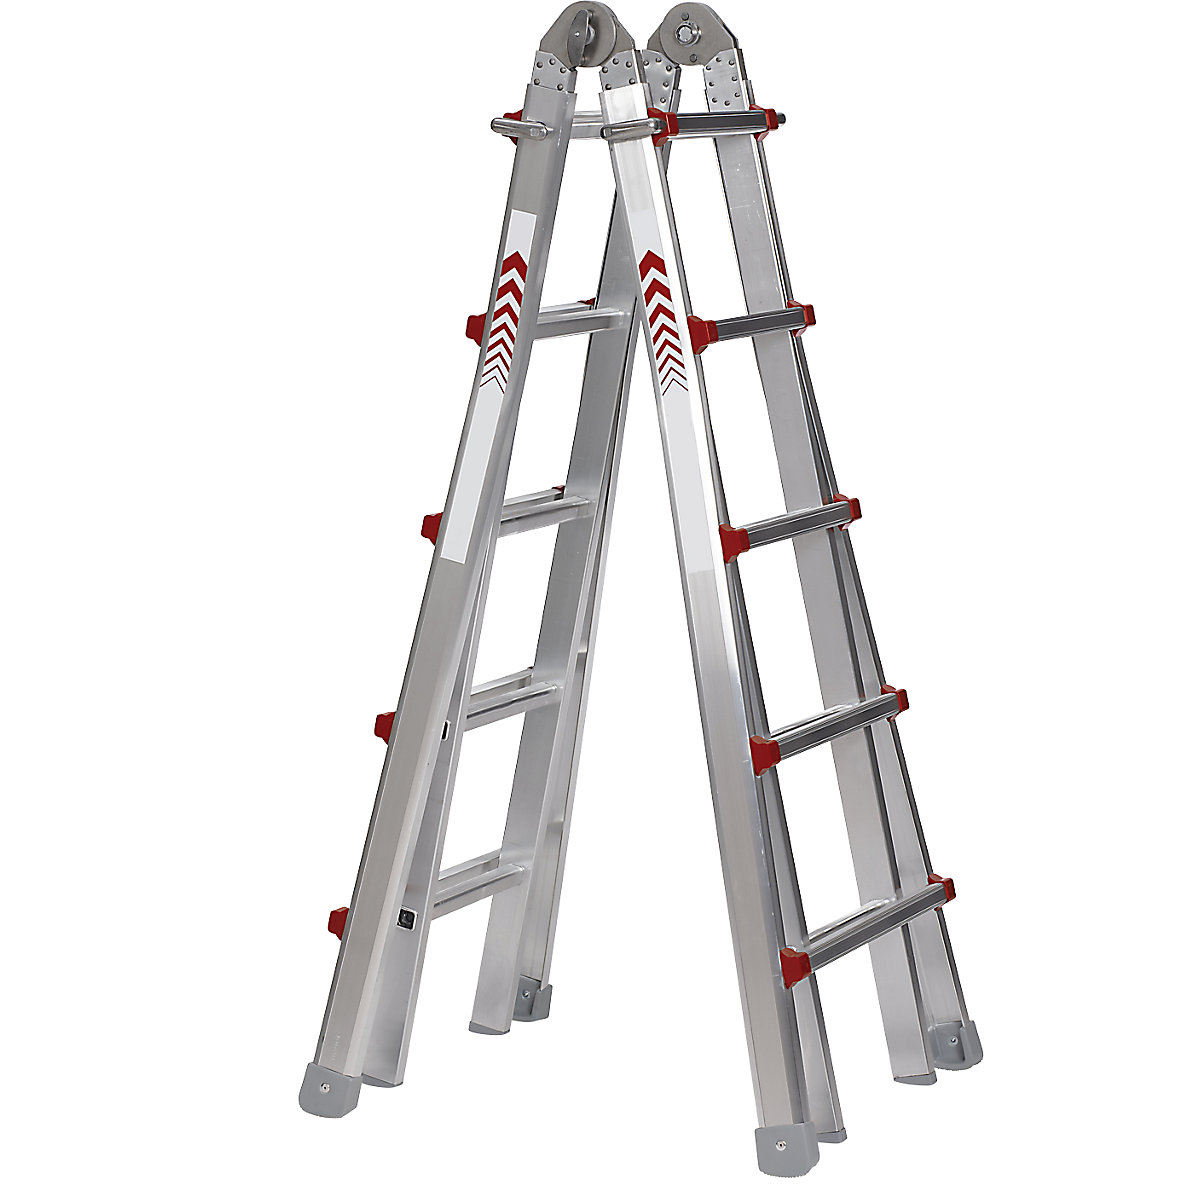 Echelle pliante télescopique, modèle combiné: escabeau, échelle simple, échelle coulissante et échelle pour escaliers, 4 x 5 échelons-14